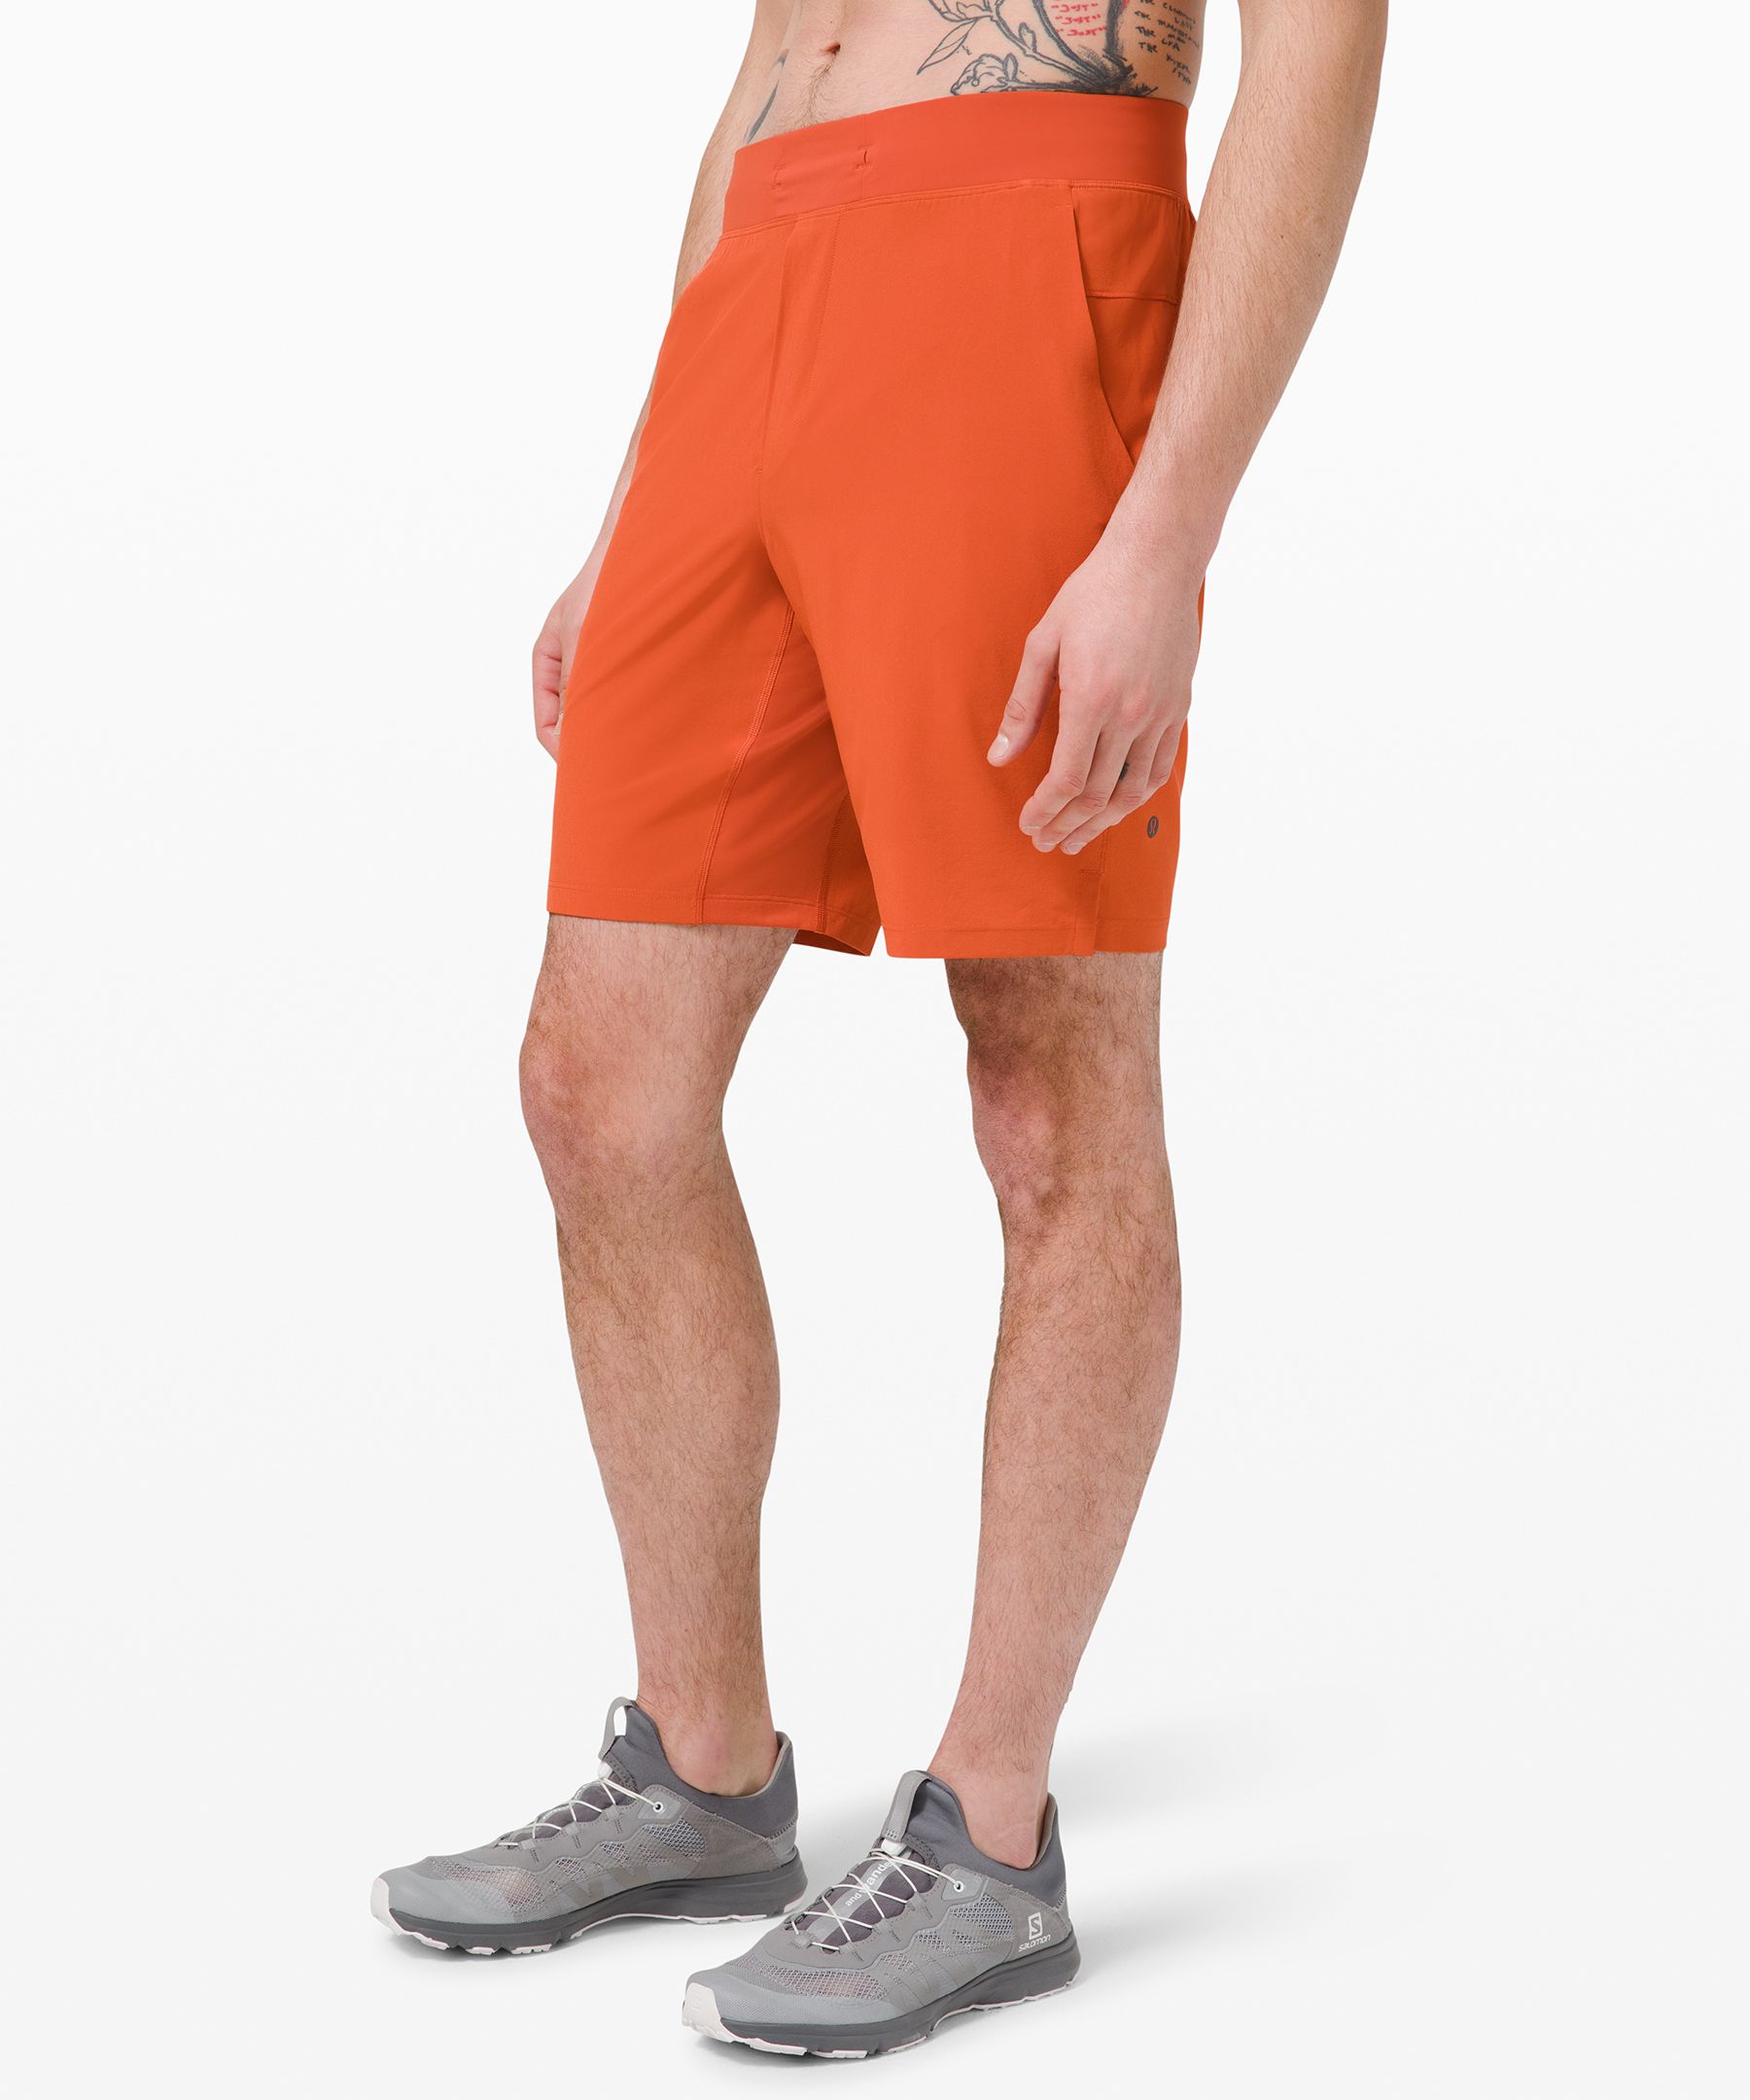 lululemon the shorts